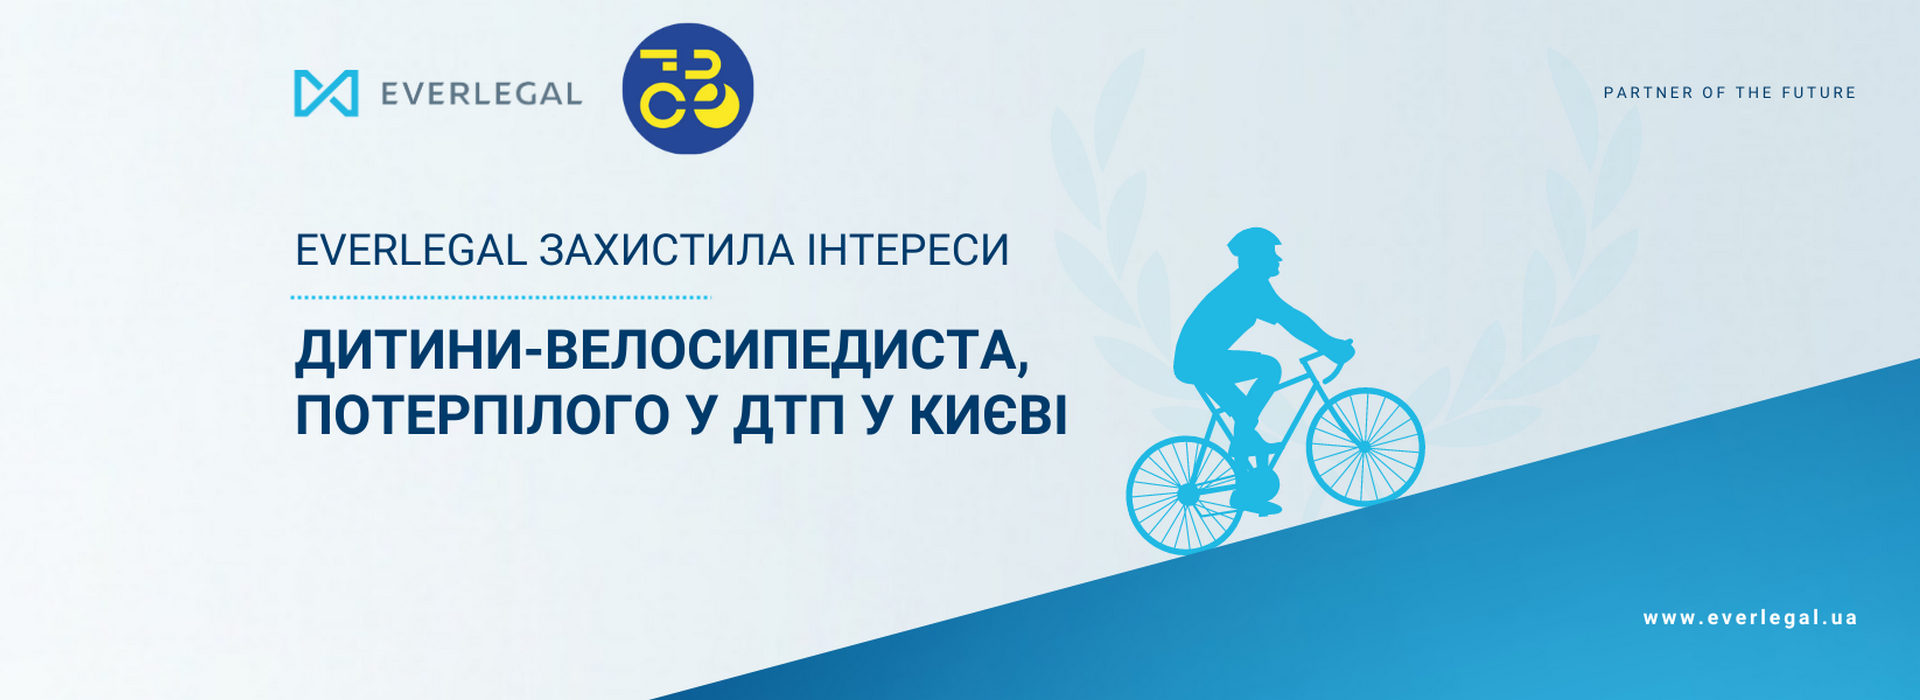 EVERLEGAL успішно захистила інтереси потерпілого велосипедиста, внаслідок ДТП у Києві